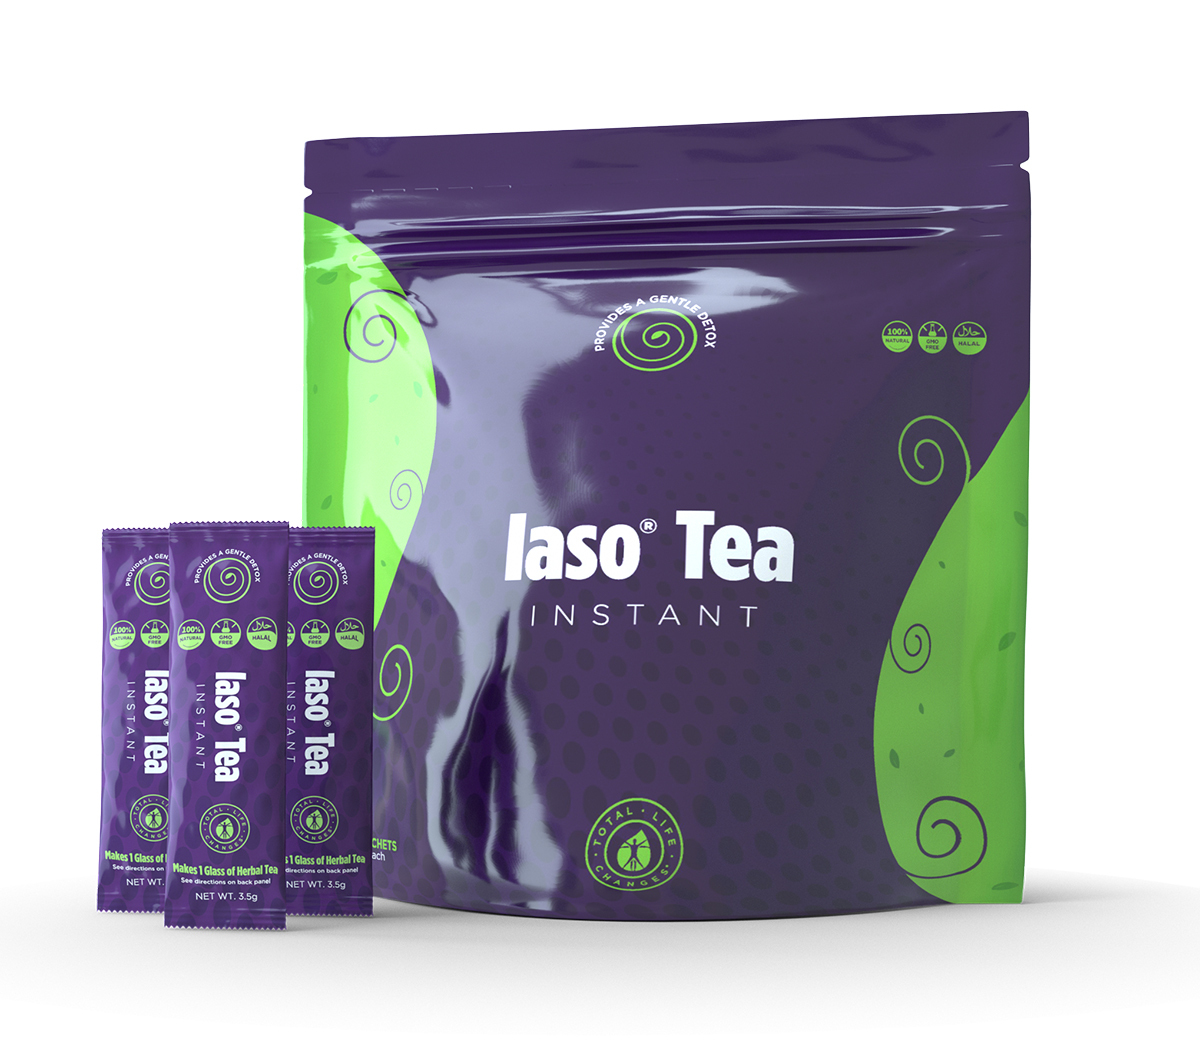 Iaso Instant Detox Tea-The No1 Selling Detox tea by TLC - $58.00